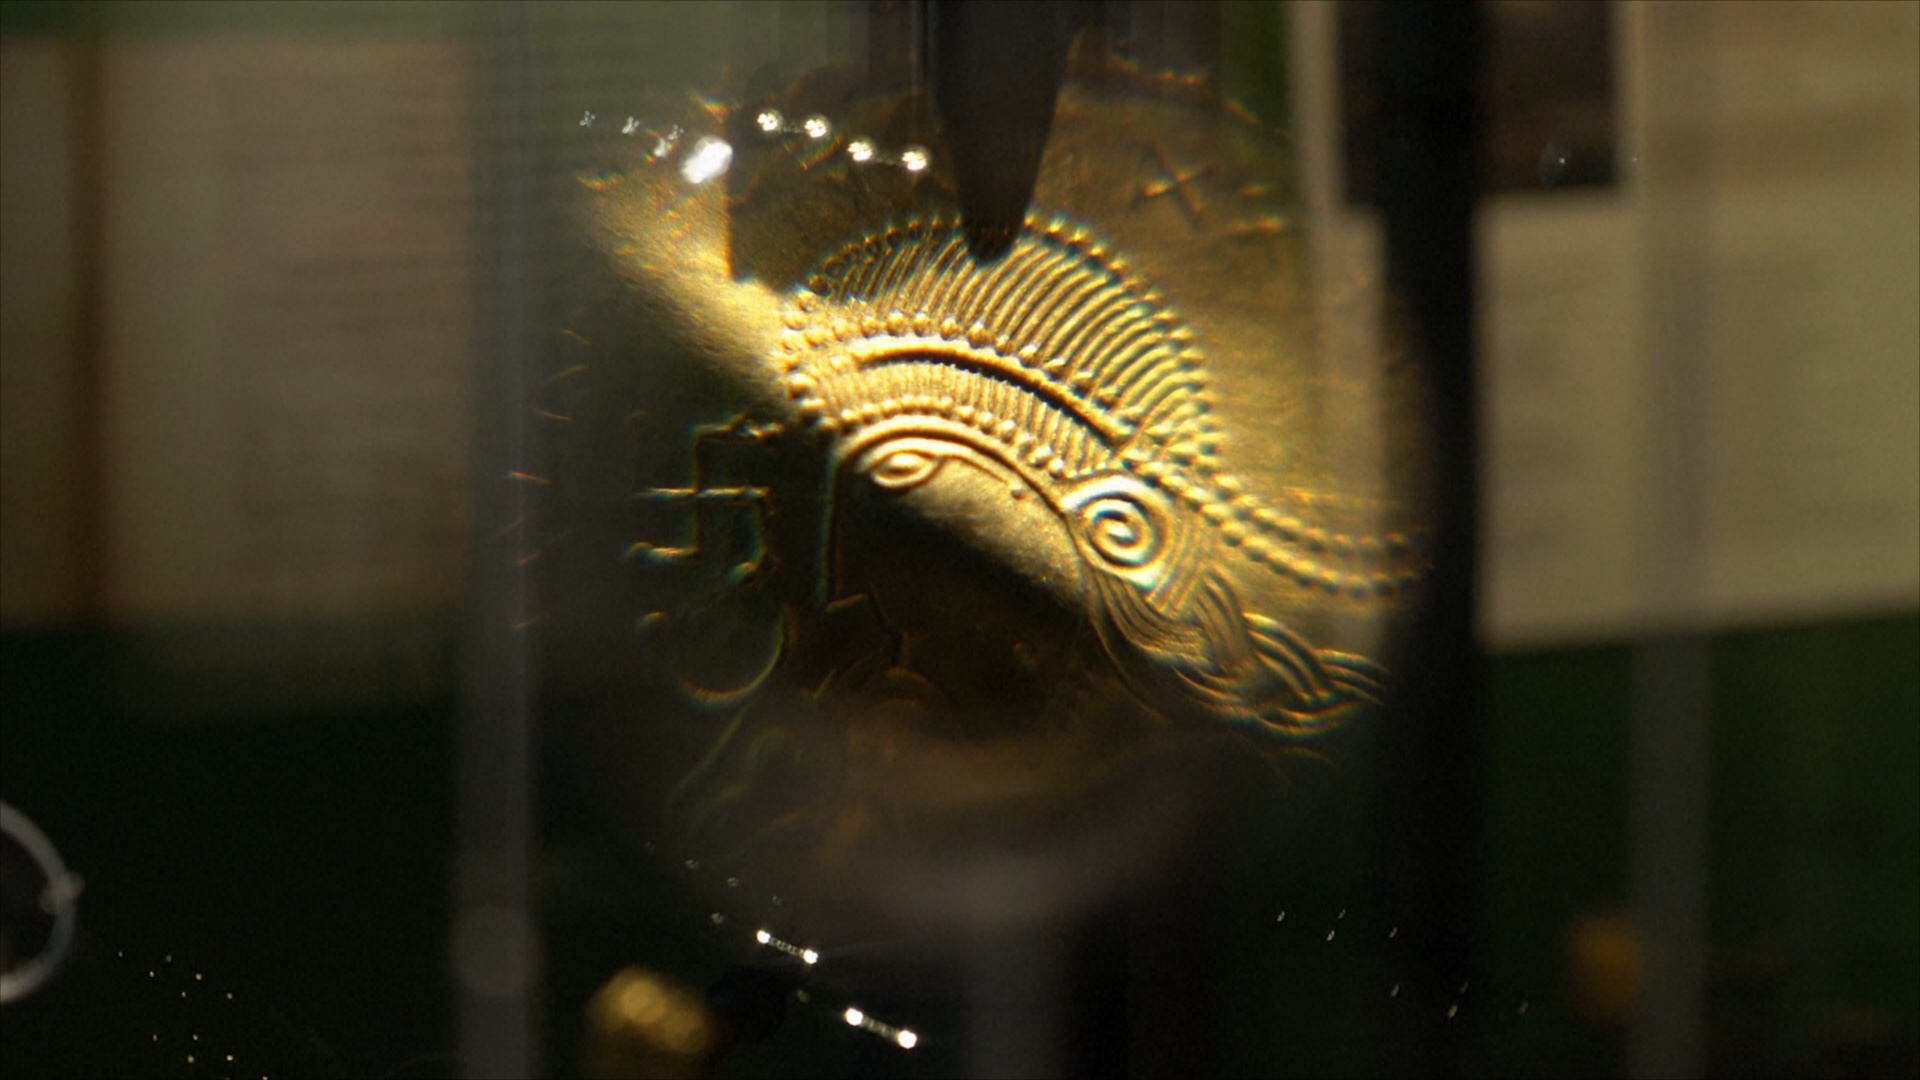 Золотой клад приоткрыл тайны скандинавской мифологии